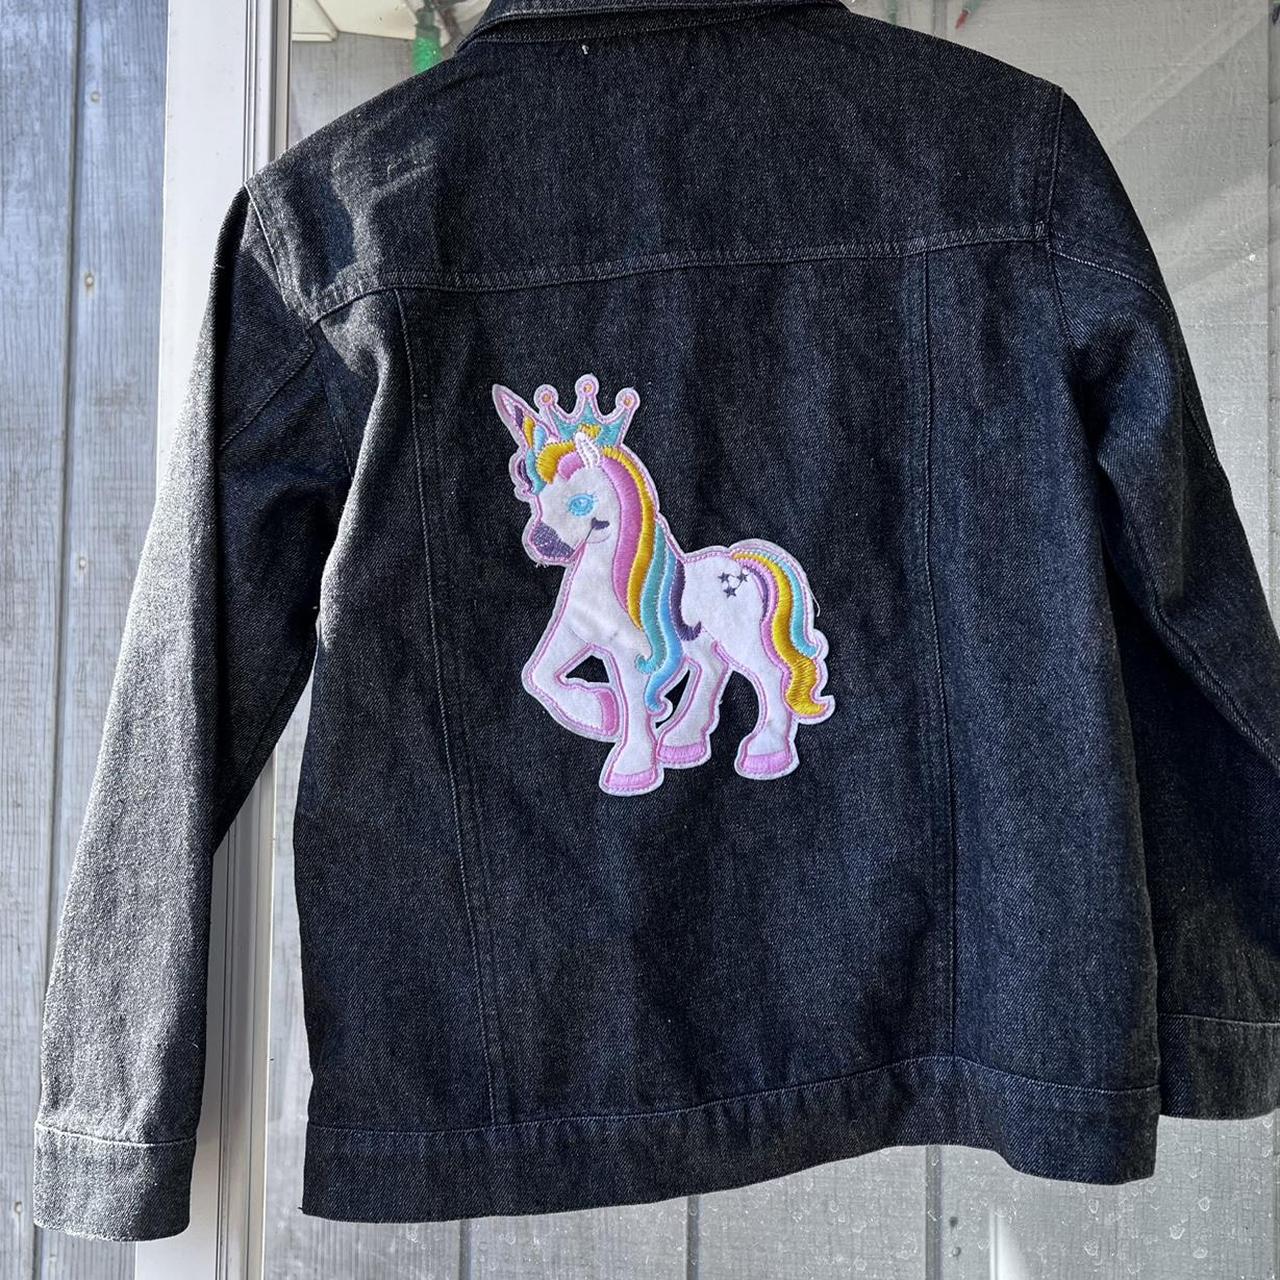 WELAKEN Unicorn Jean Jacket for Girls